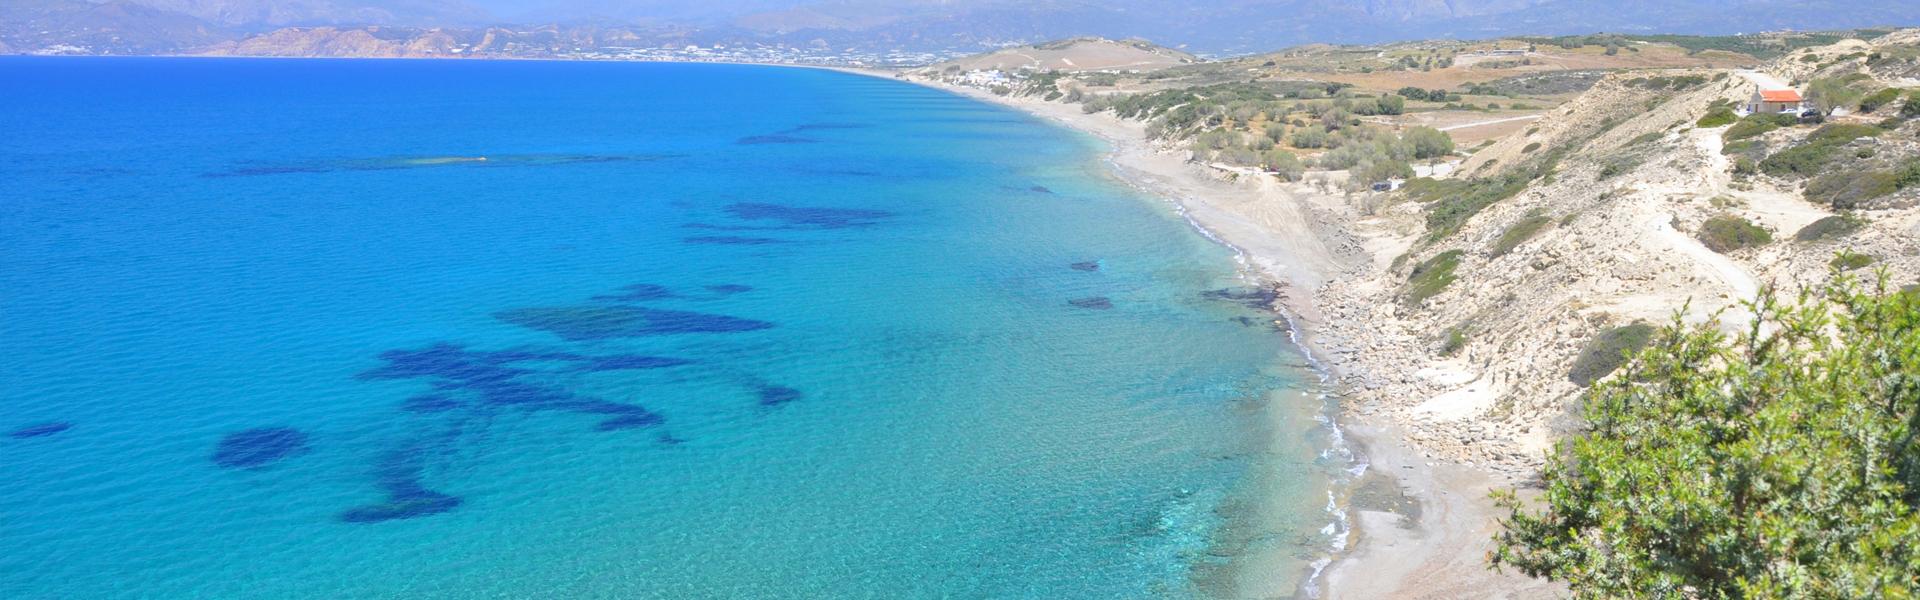 Στην Κρήτη βρίσκεται η ομορφότερη παραλία στον κόσμο! (φωτό)